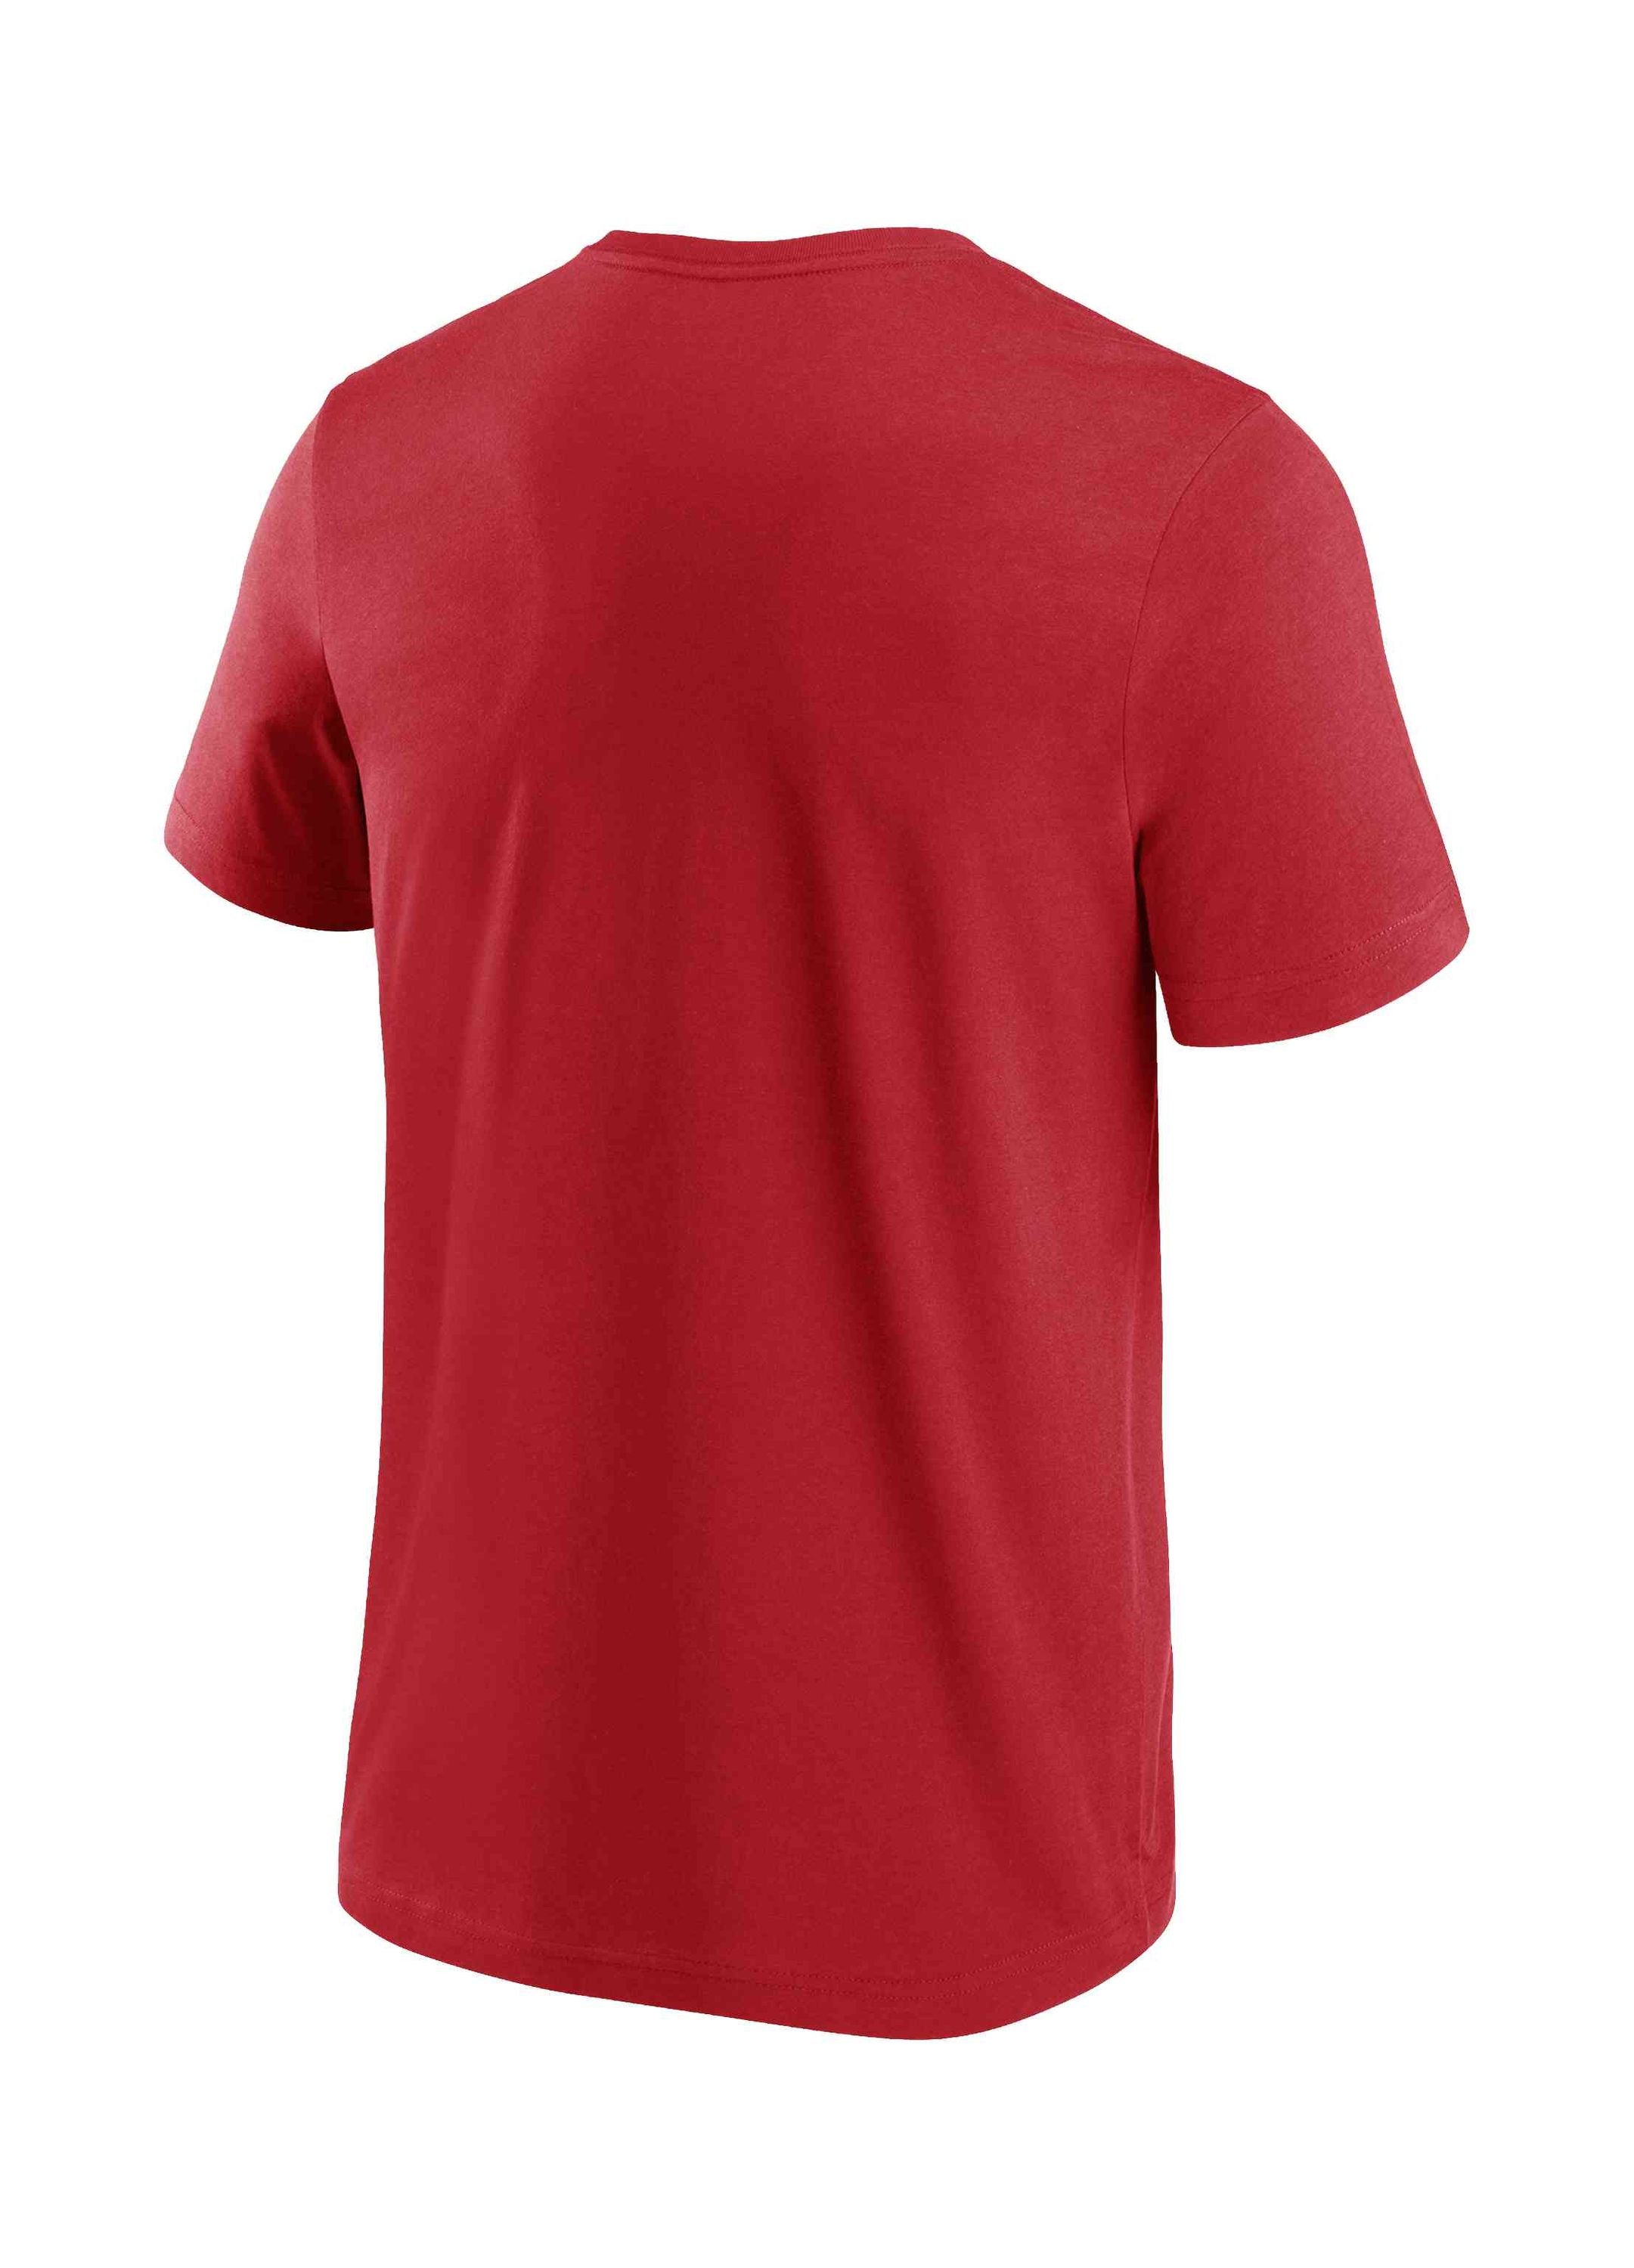 Fanatics - NFL Kansas City Chiefs Chrome Graphic T-Shirt